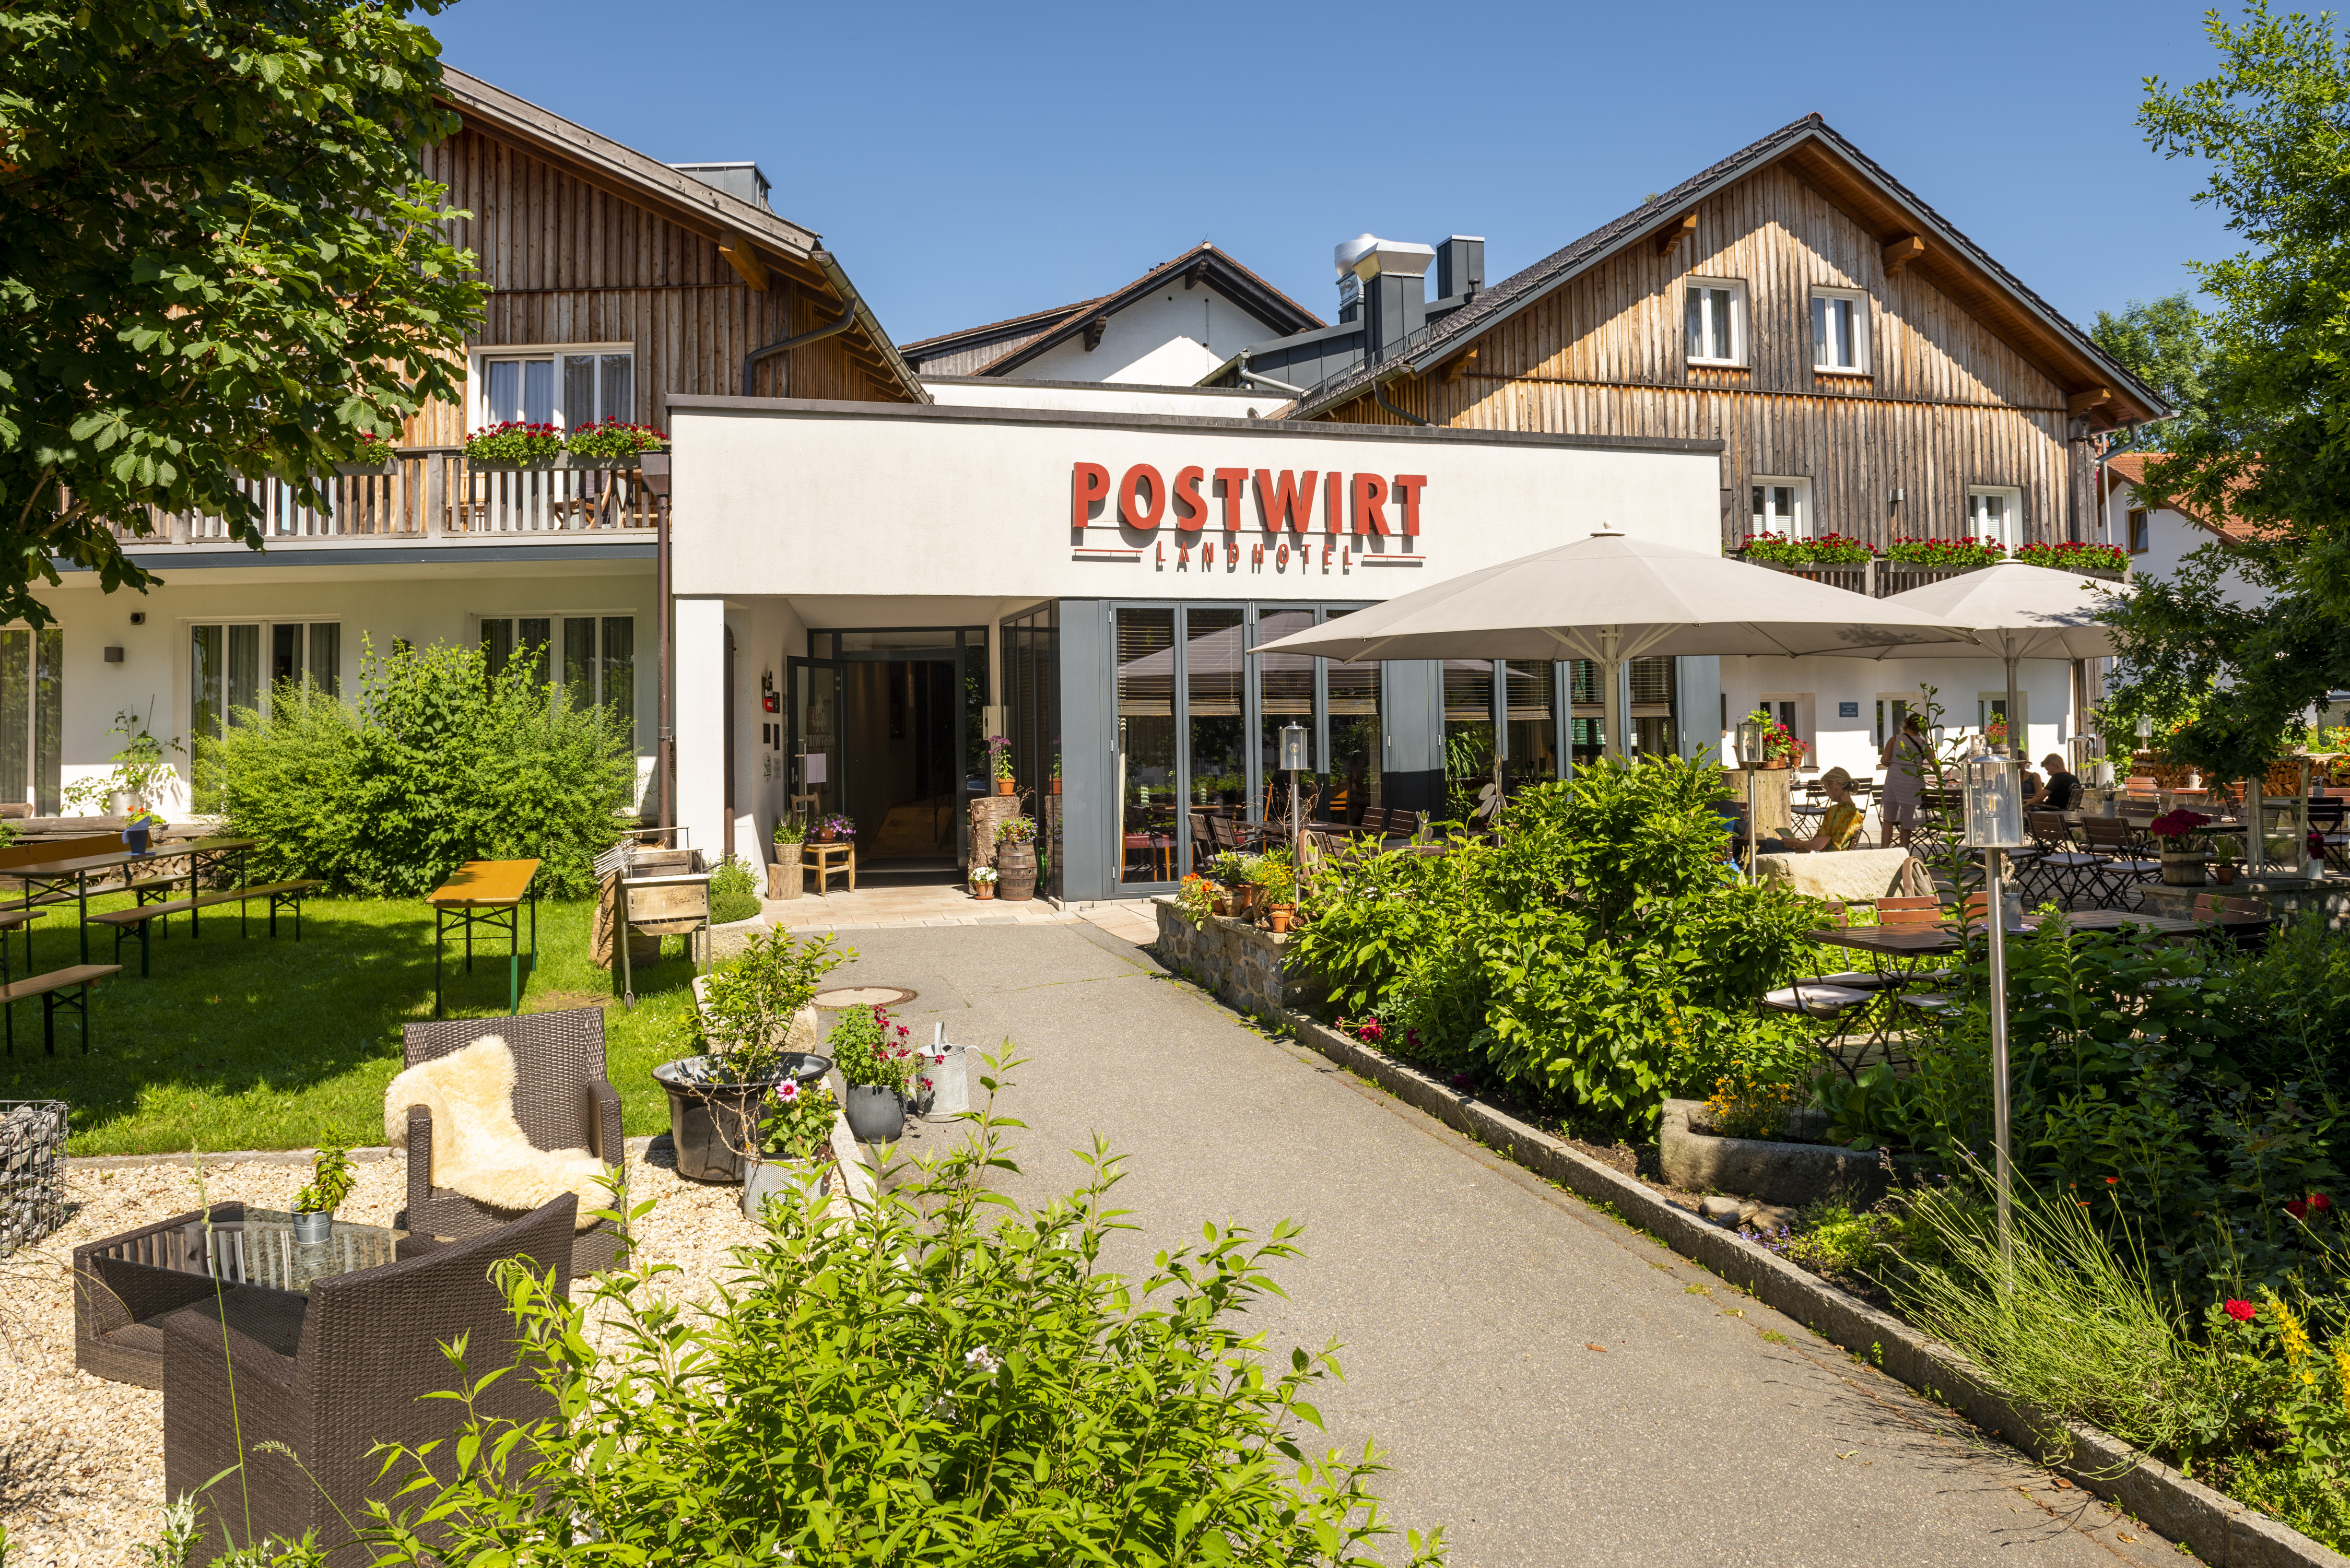 Aktiv und entspannt im Landhotel Postwirt in Grafenau